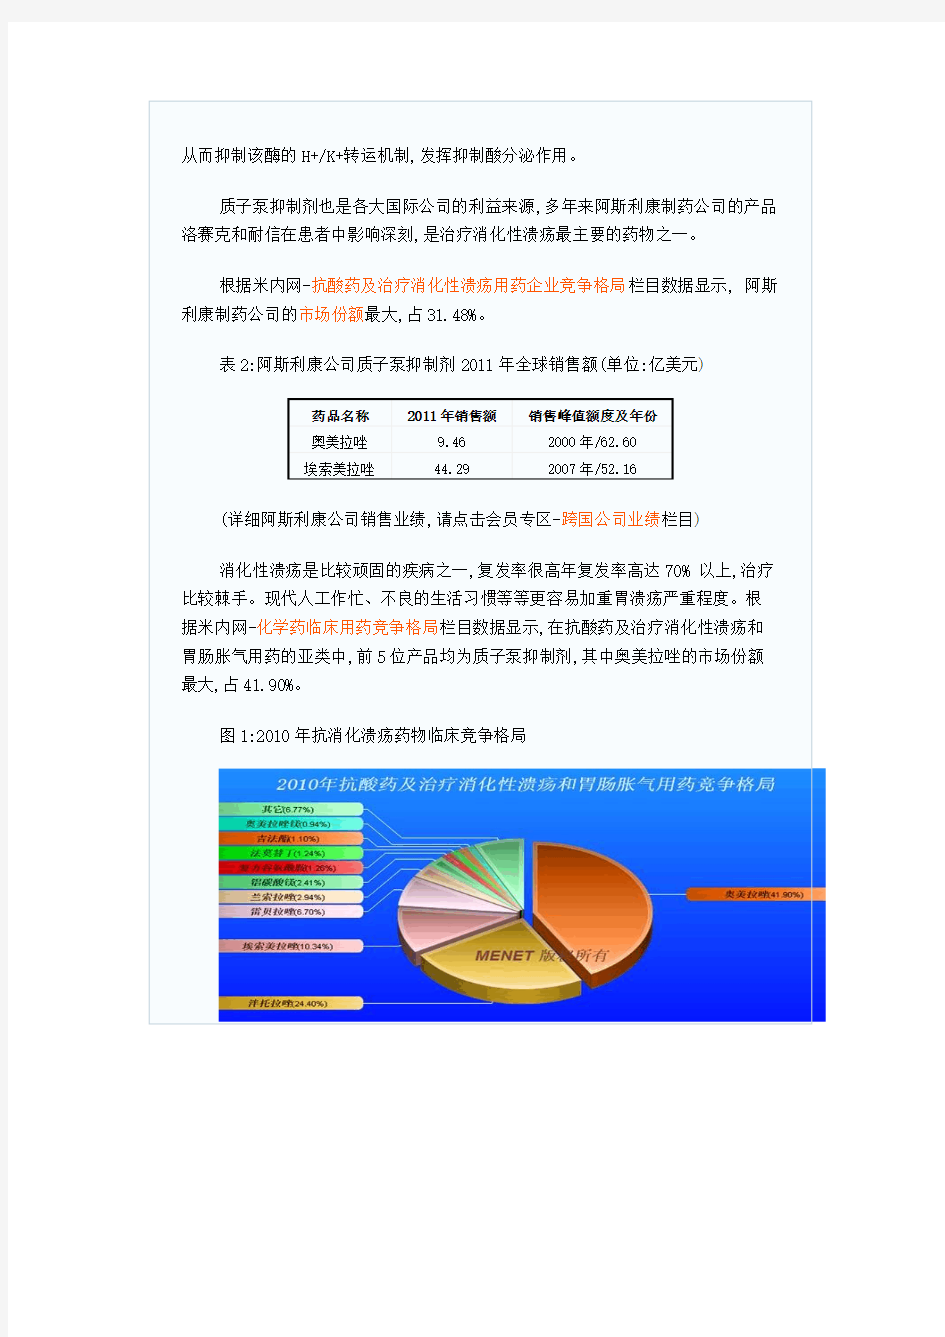 质子泵抑制剂市场分析(2011年销售额)